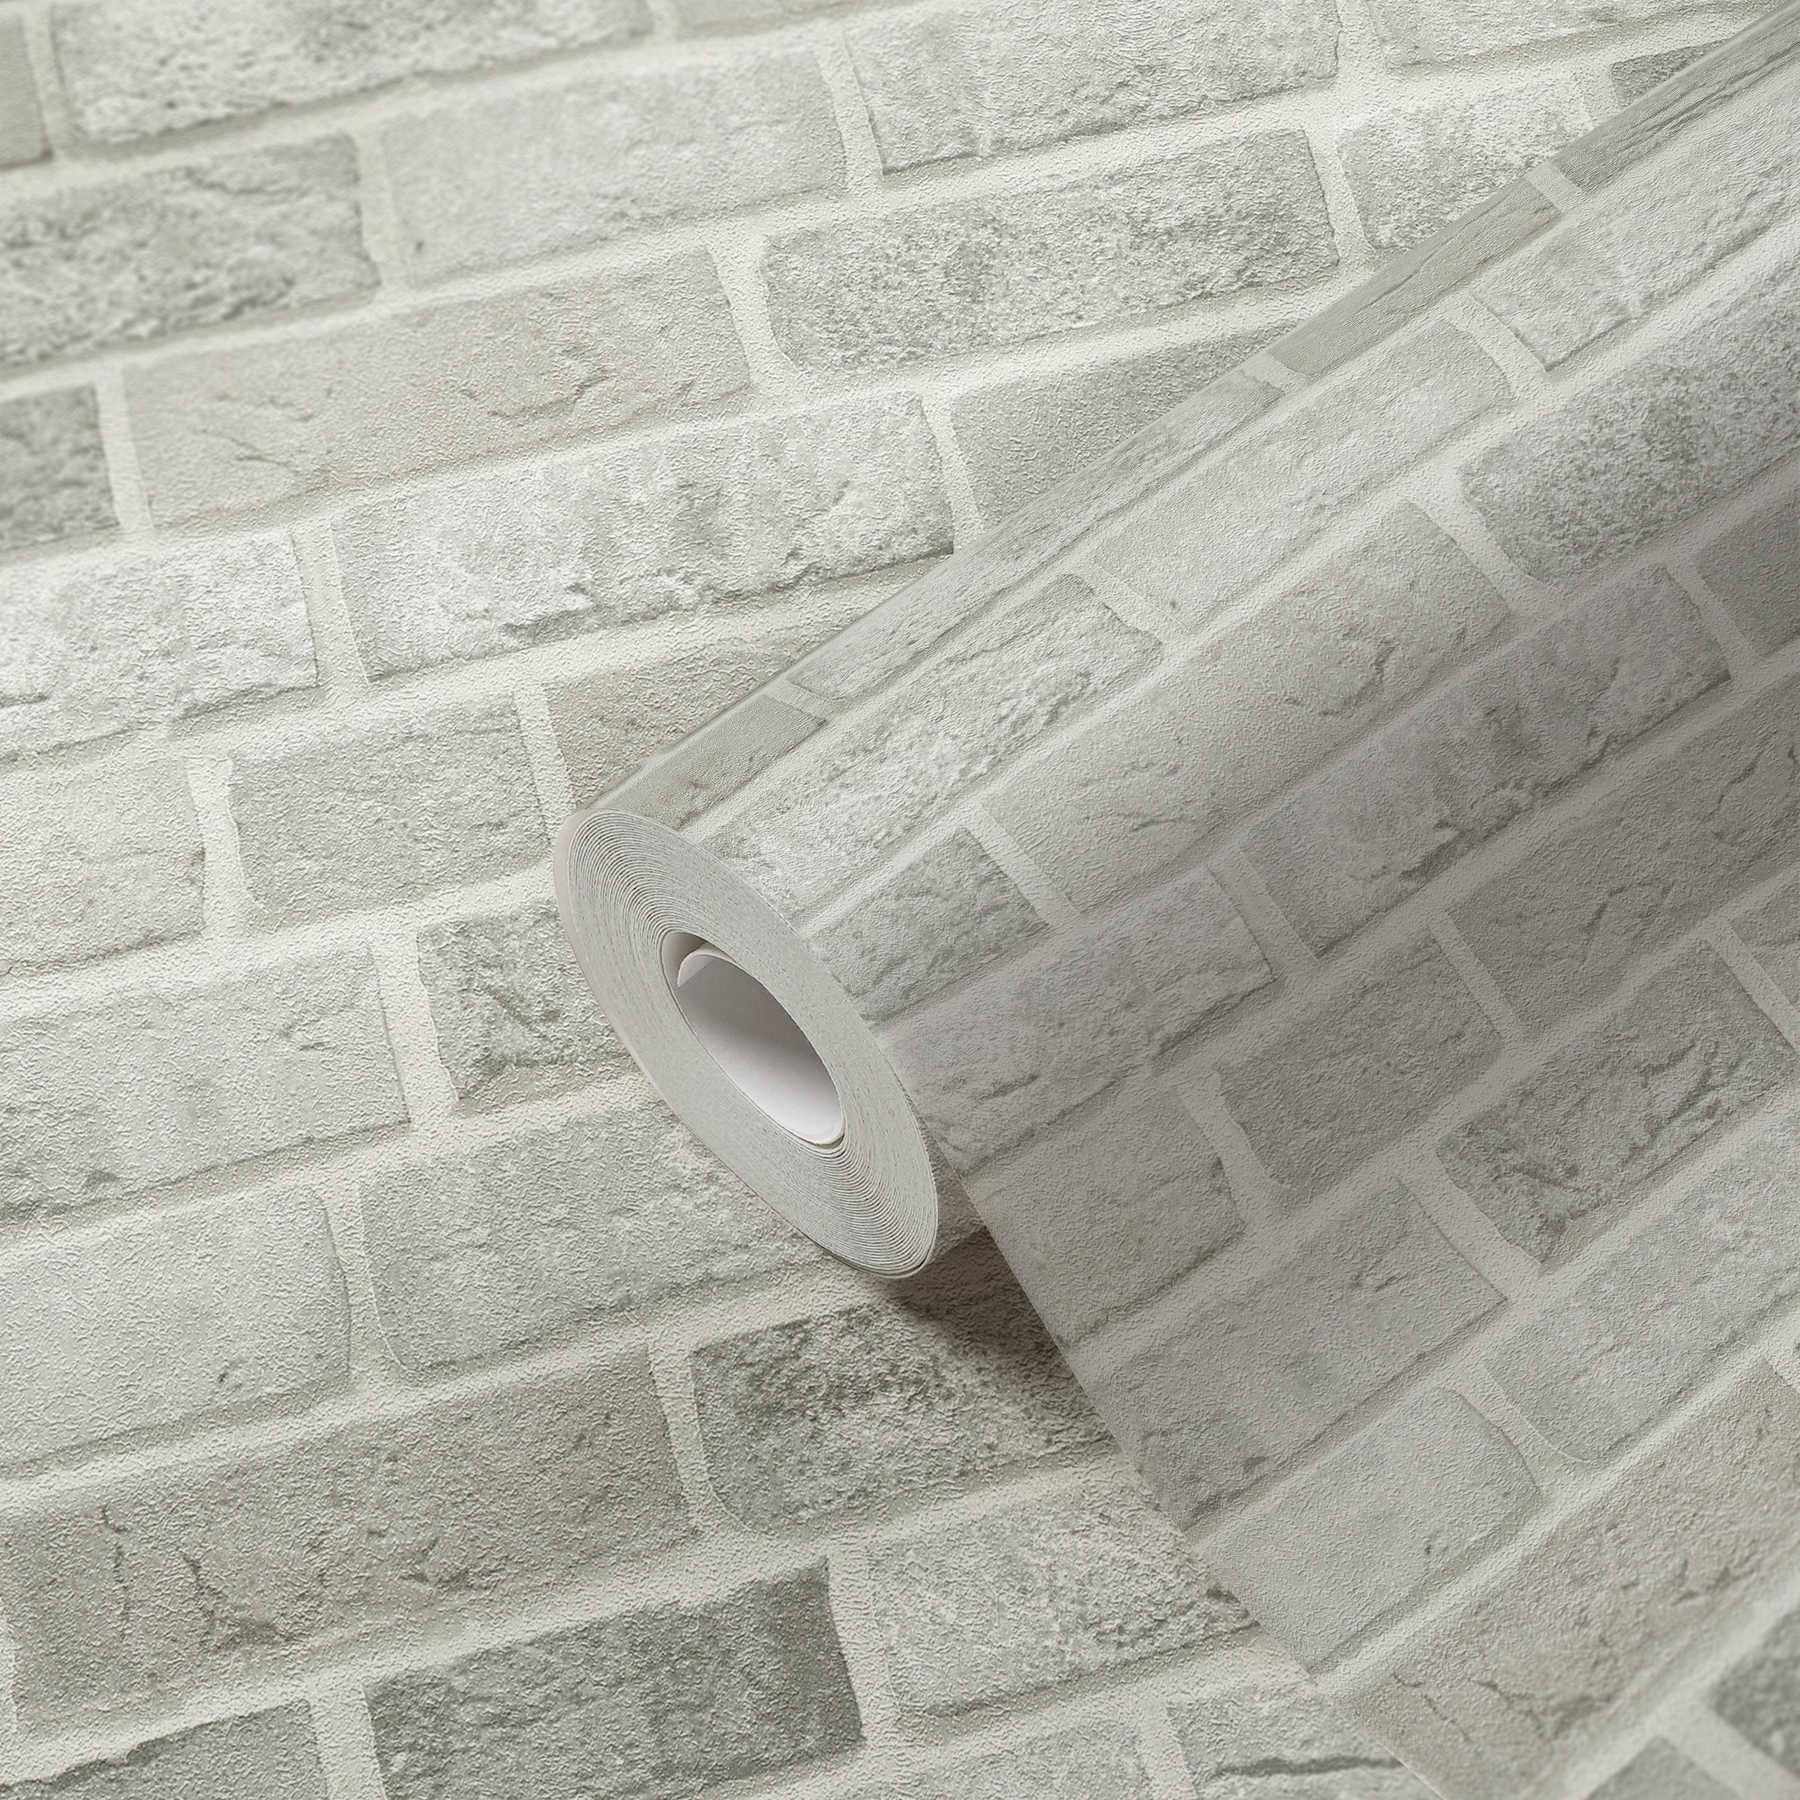             papel pintado diseño de pared de ladrillo 3D aspecto de piedra - gris, blanco
        